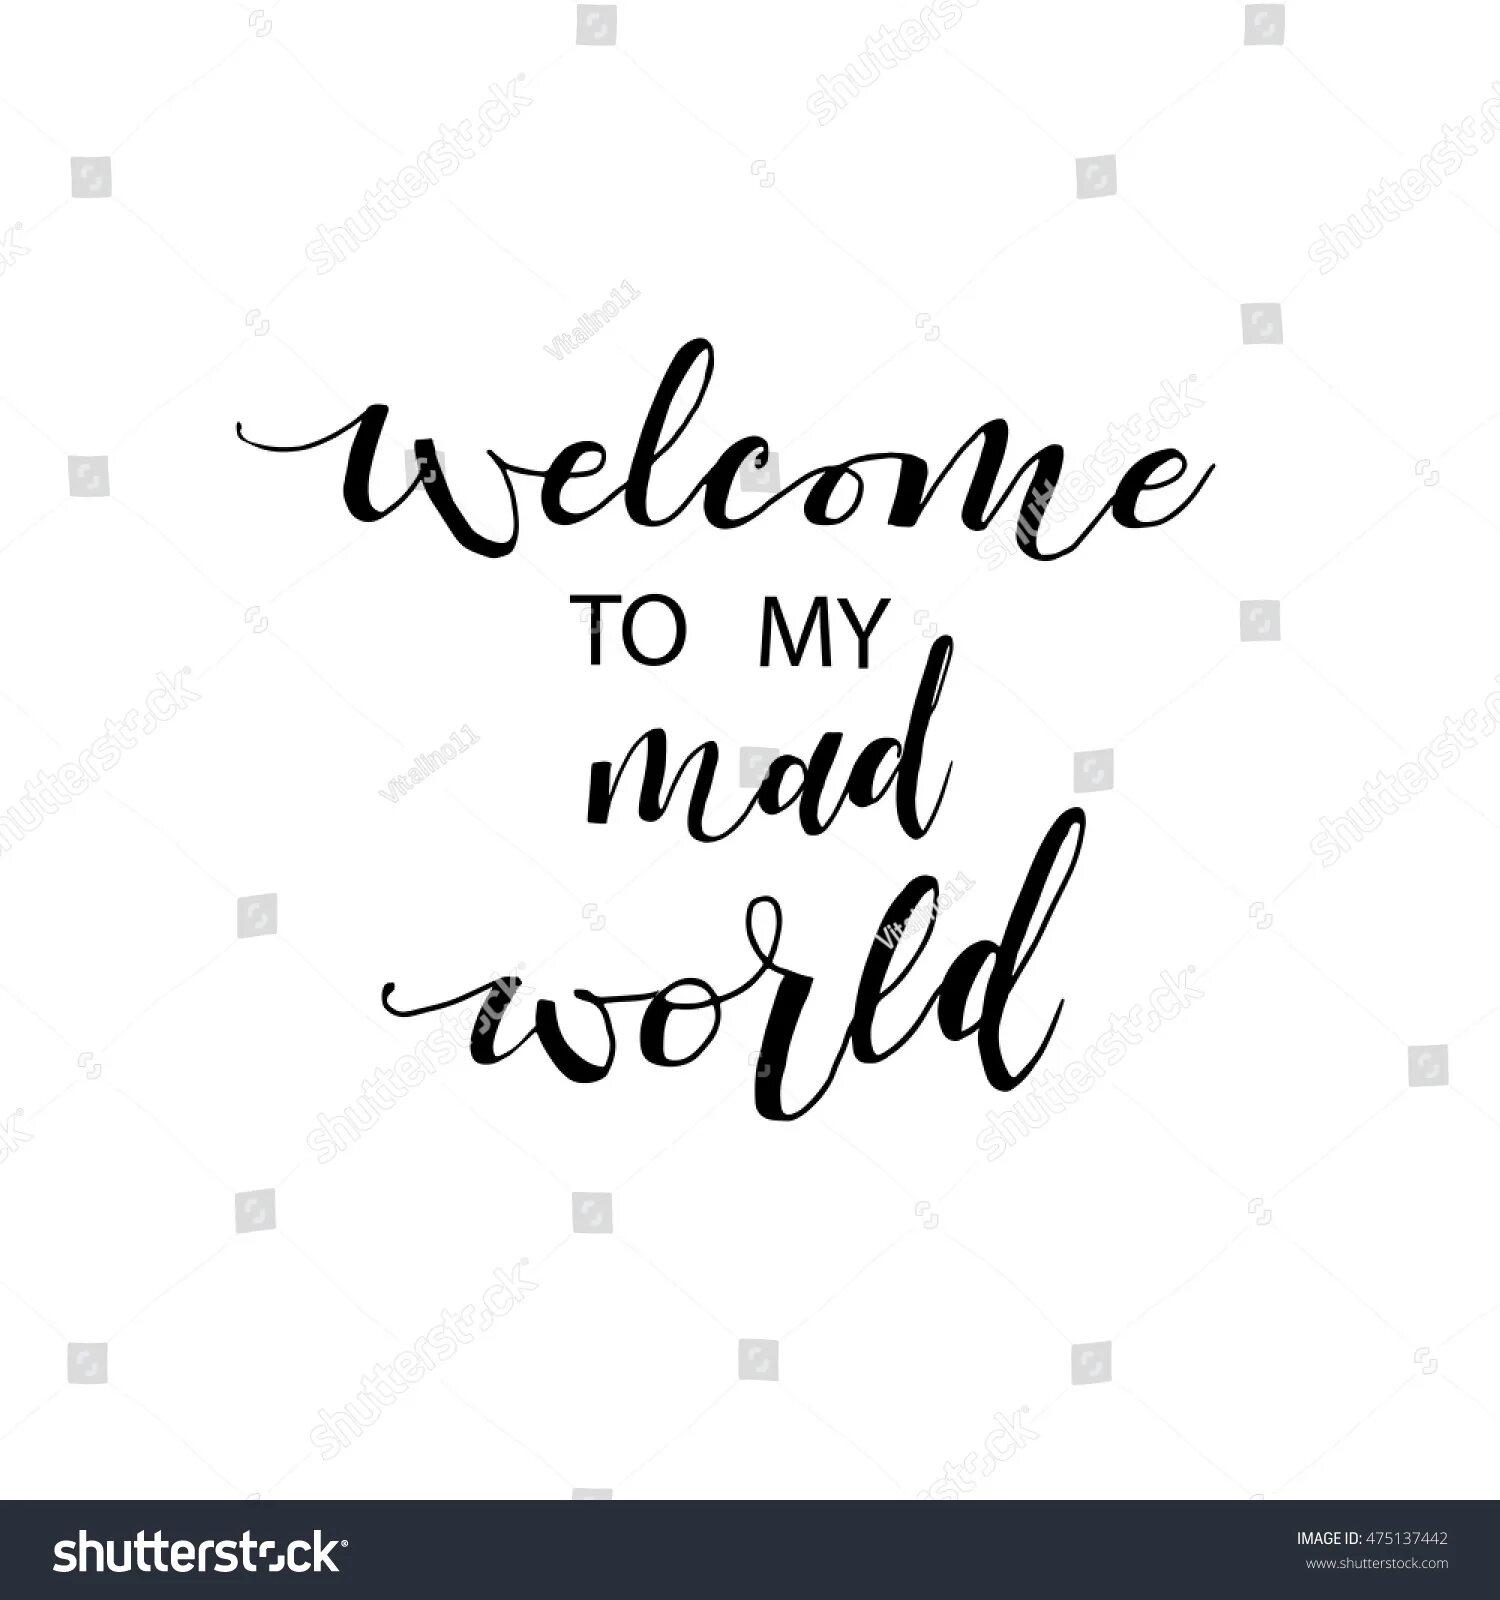 Welcome to my World. Welcome my Mad World. Welcome to my World картинка. Обои велком my Mad World.